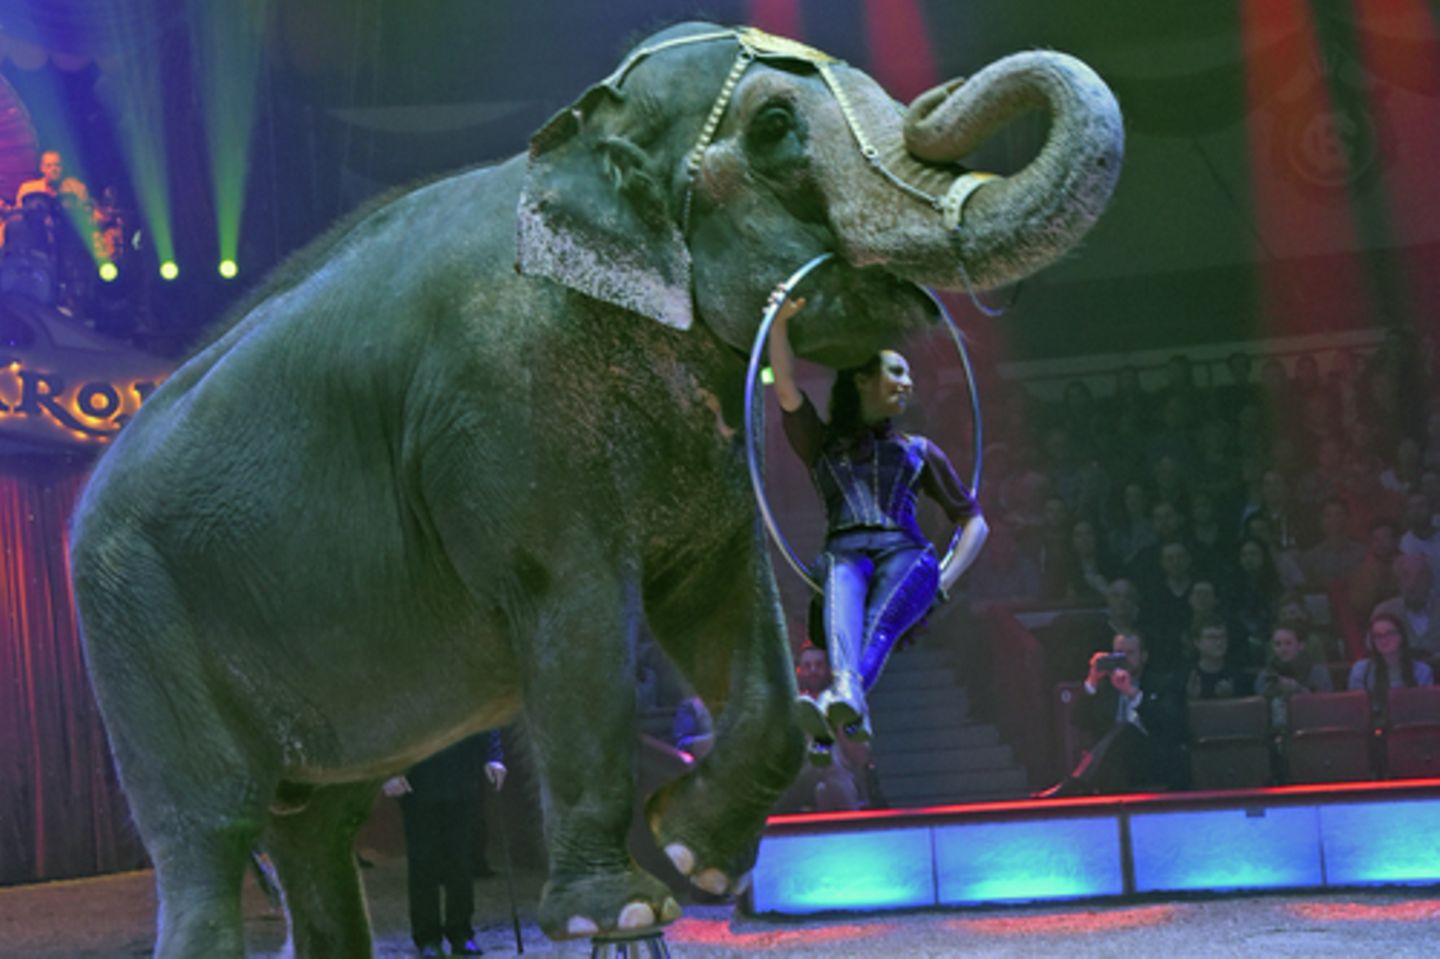 Elefant führt eine Nummer im Zirkus auf